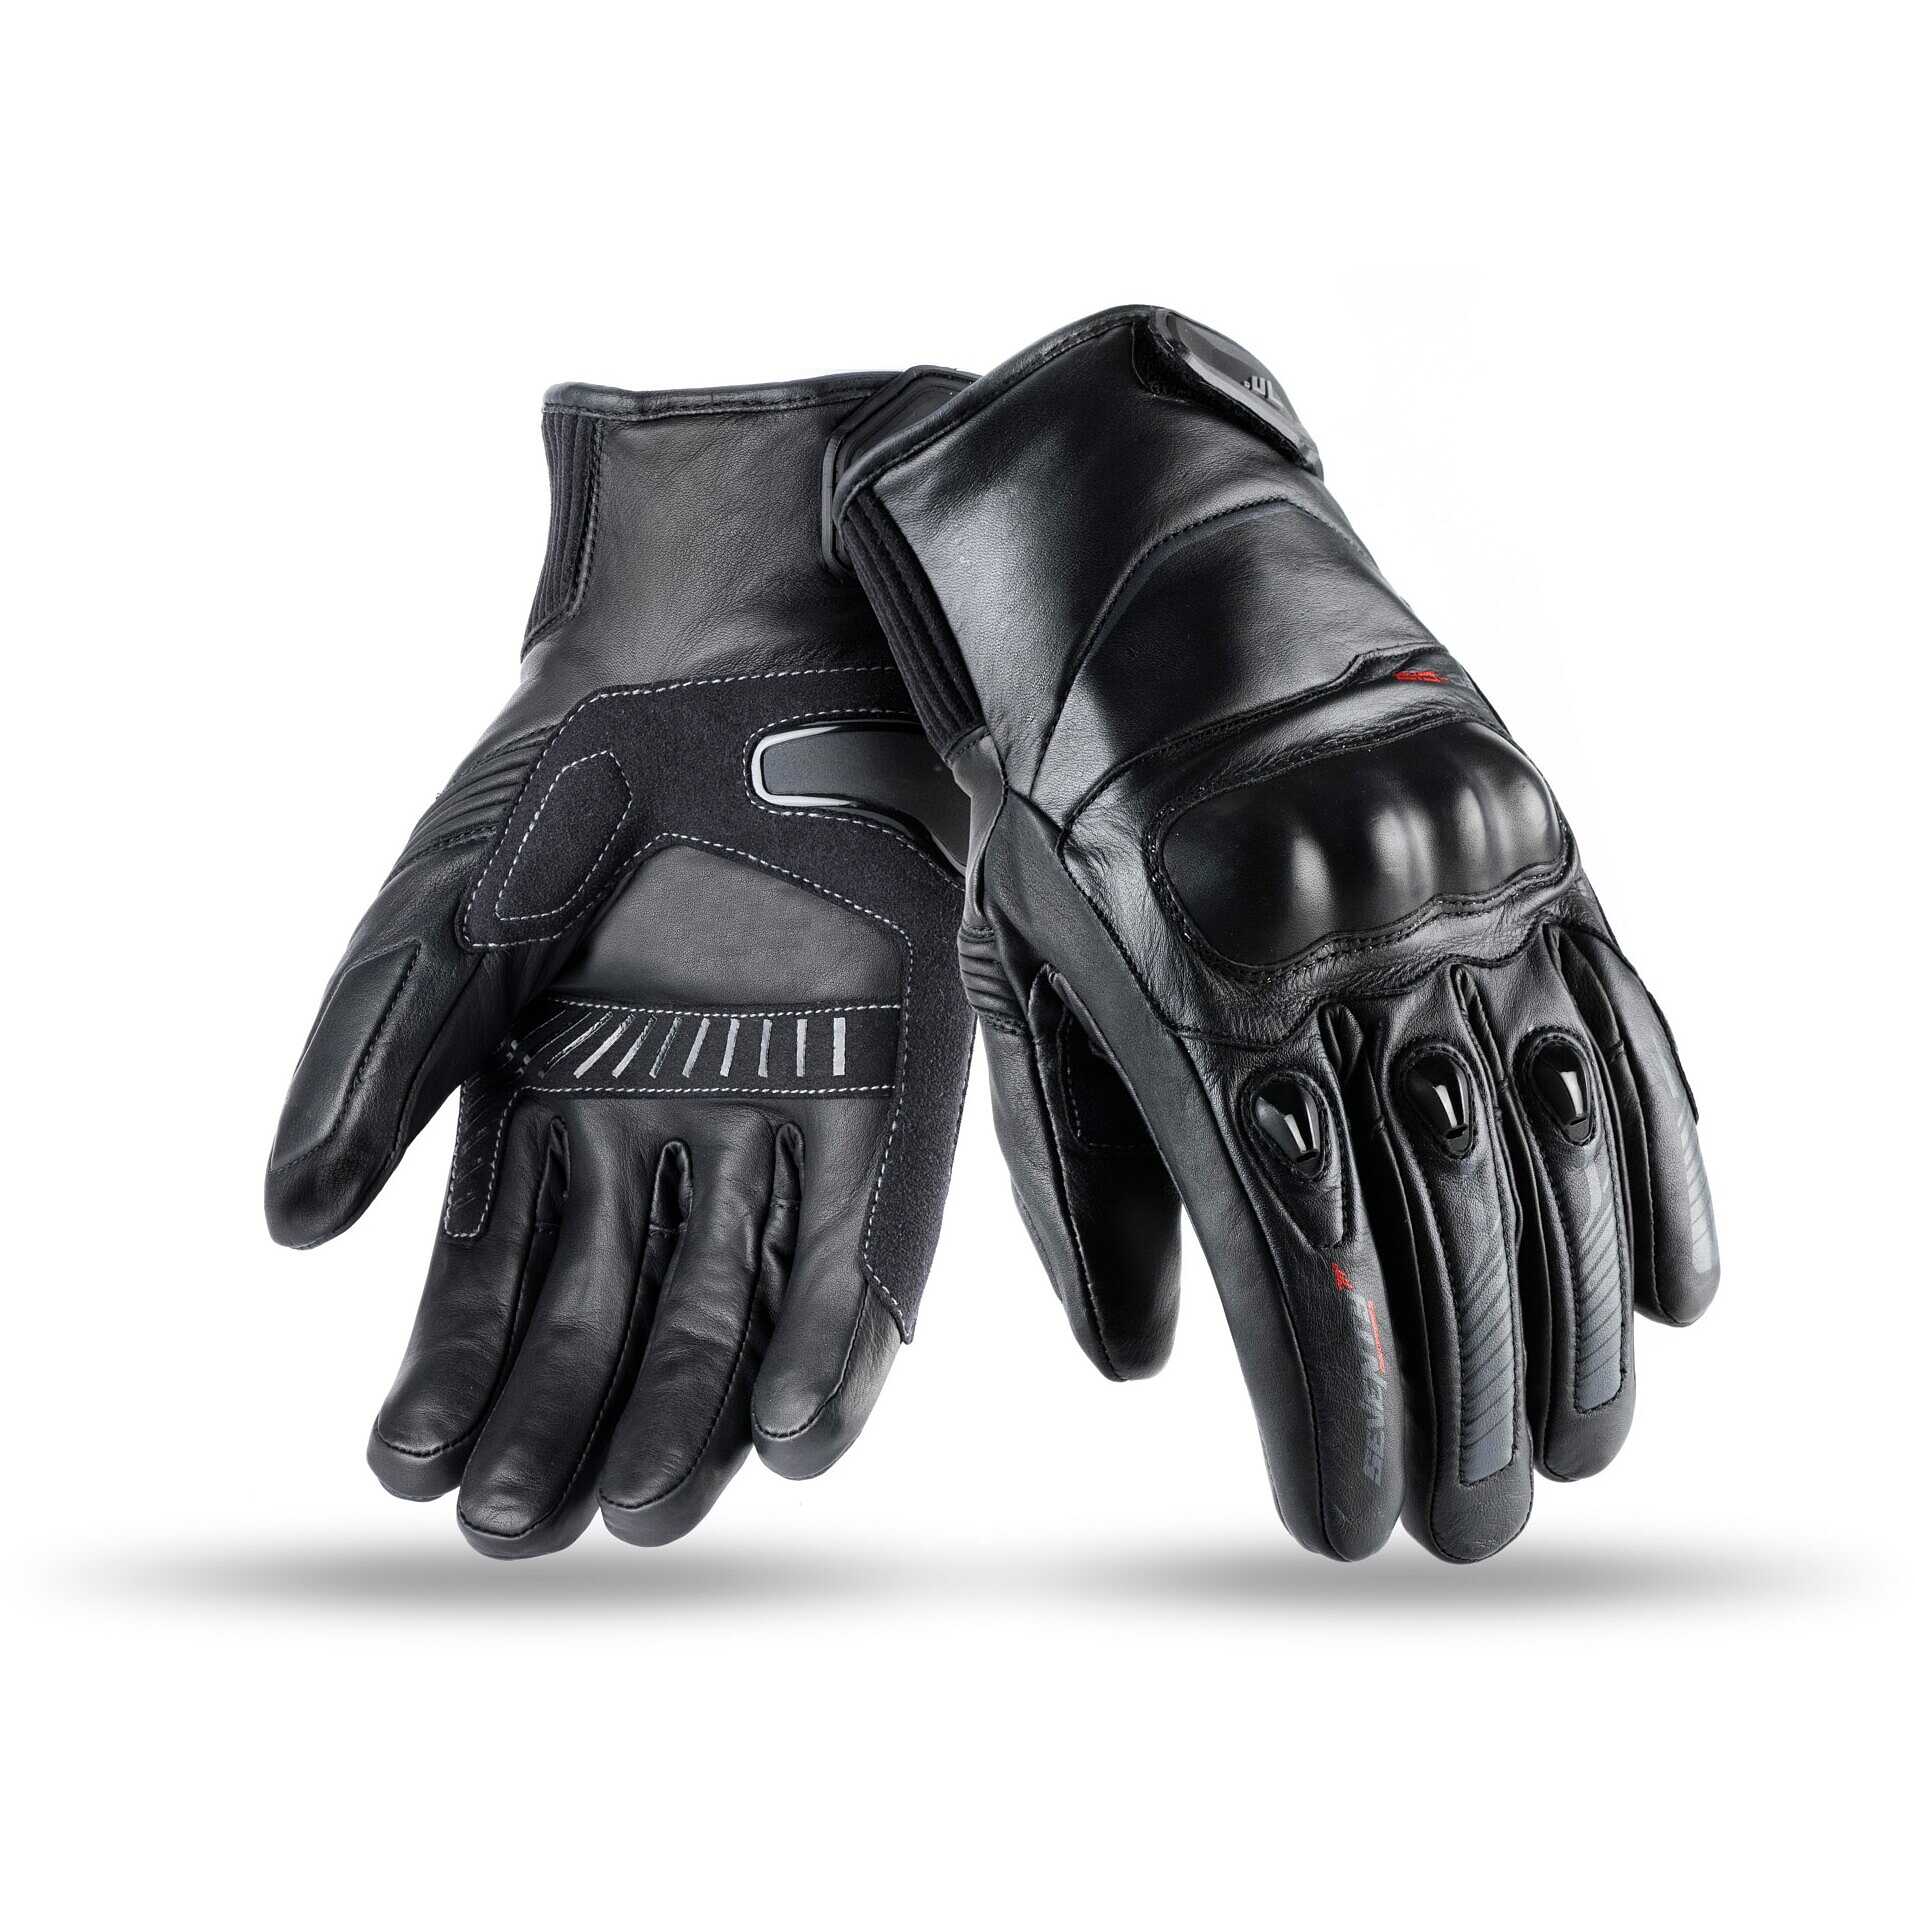 Soixante-dix gants techniques de moto d'hiver avec des protections  approuvées noires de tissu C9 Vente en Ligne 